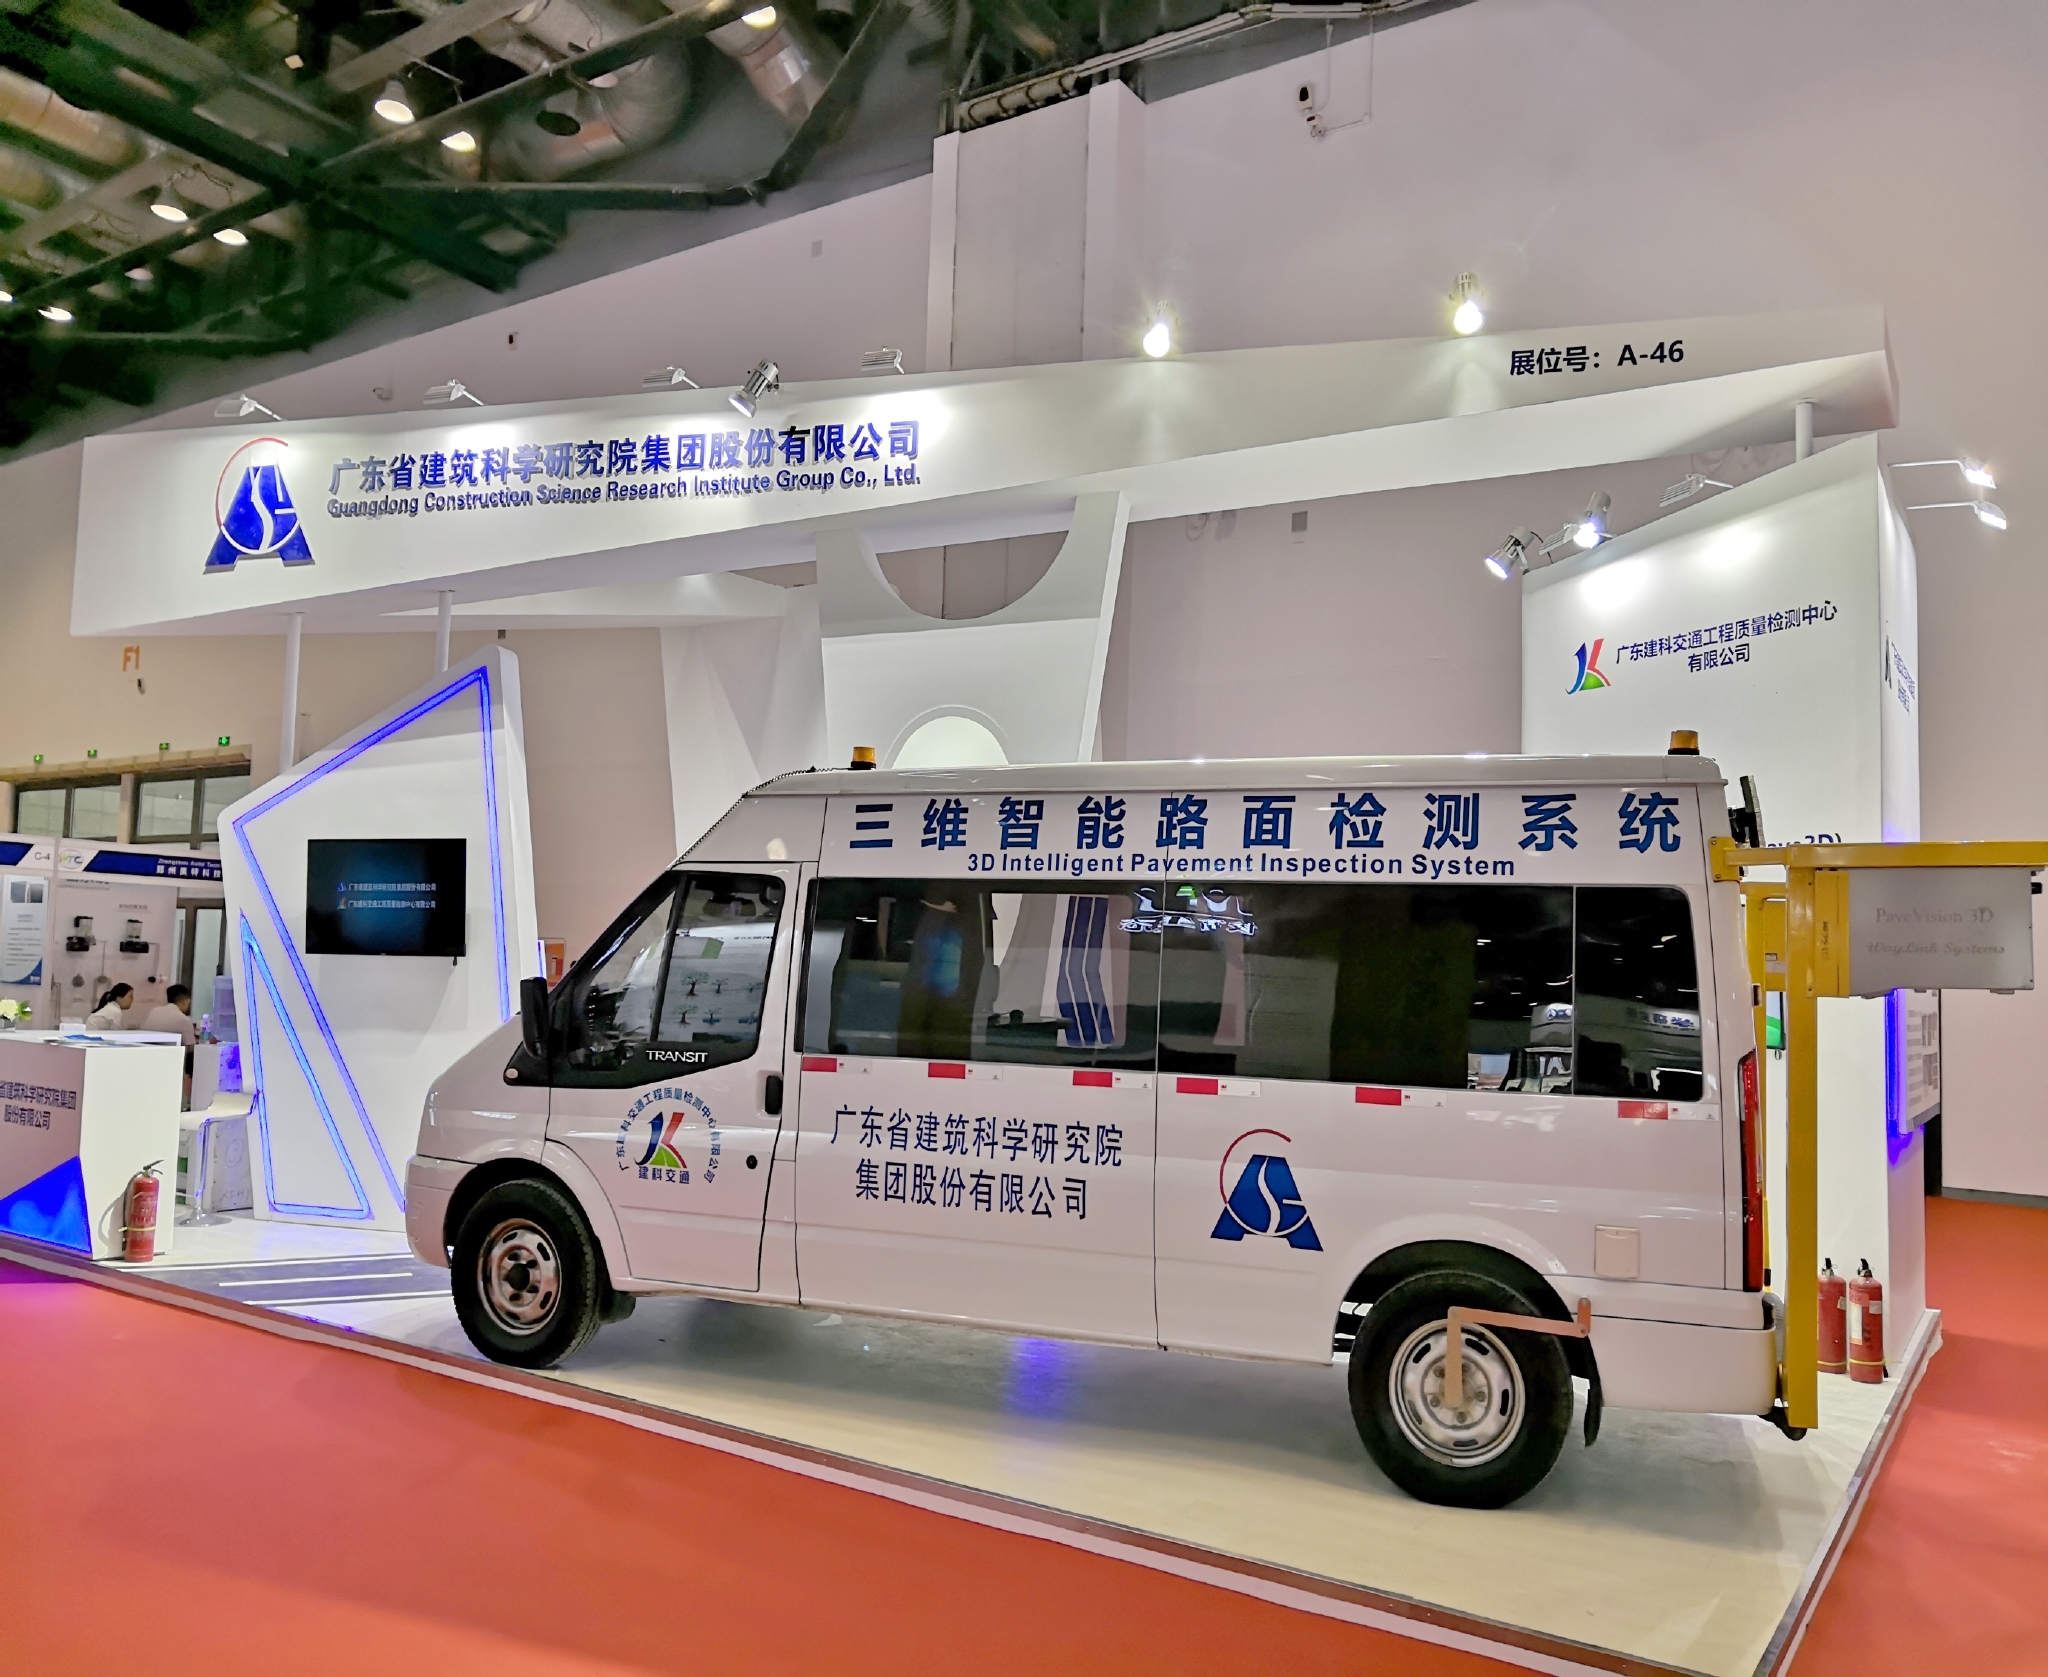  广东建工集团自主研制的国际领先的三维智能激光检测车